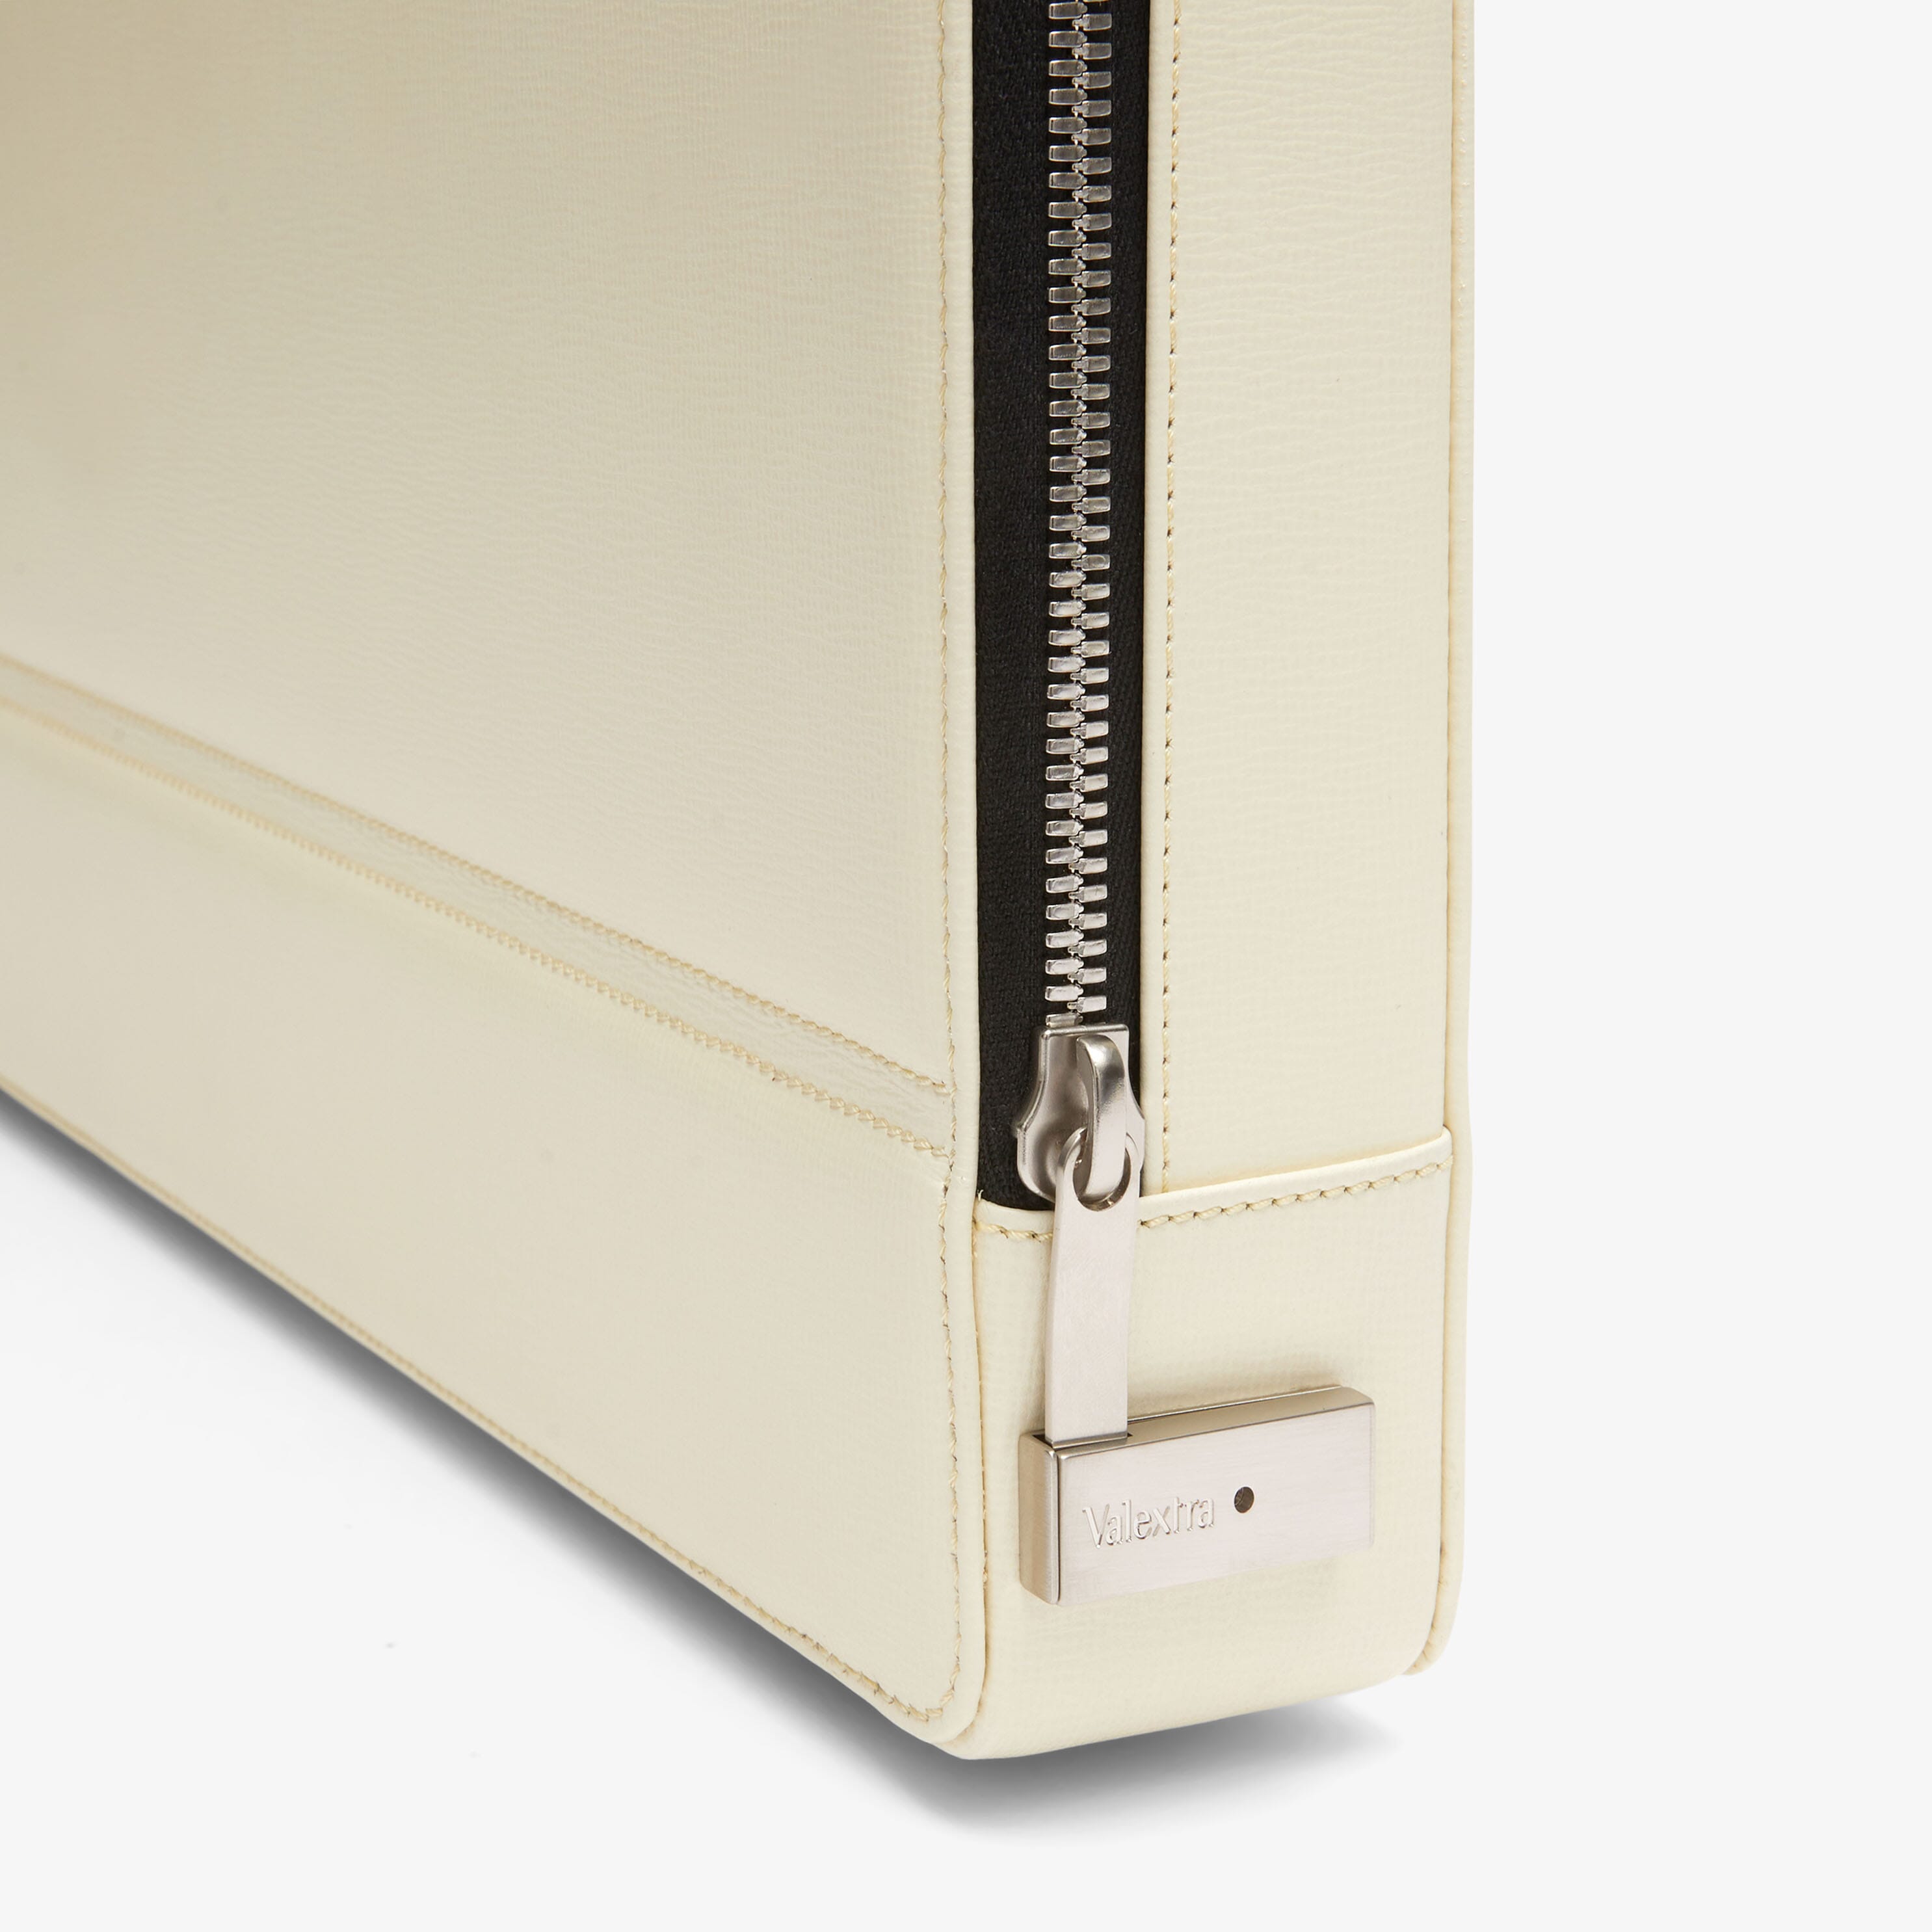 White Leather Medium Briefcase with zip | Valextra Premier